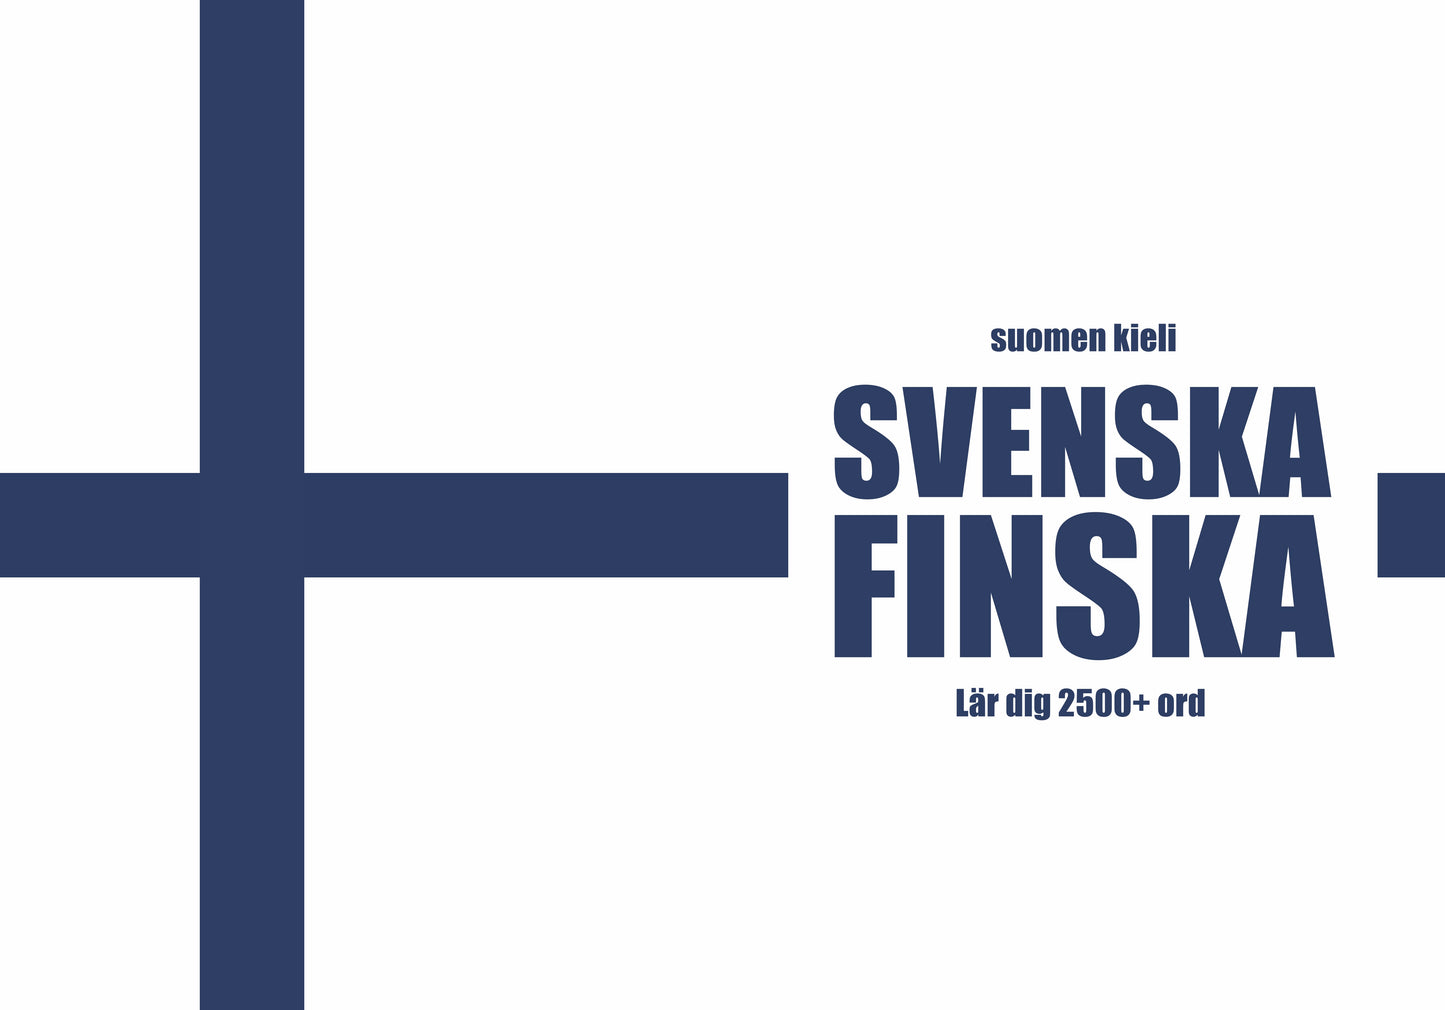 Svenska-finska anteckningsbok att fylla i